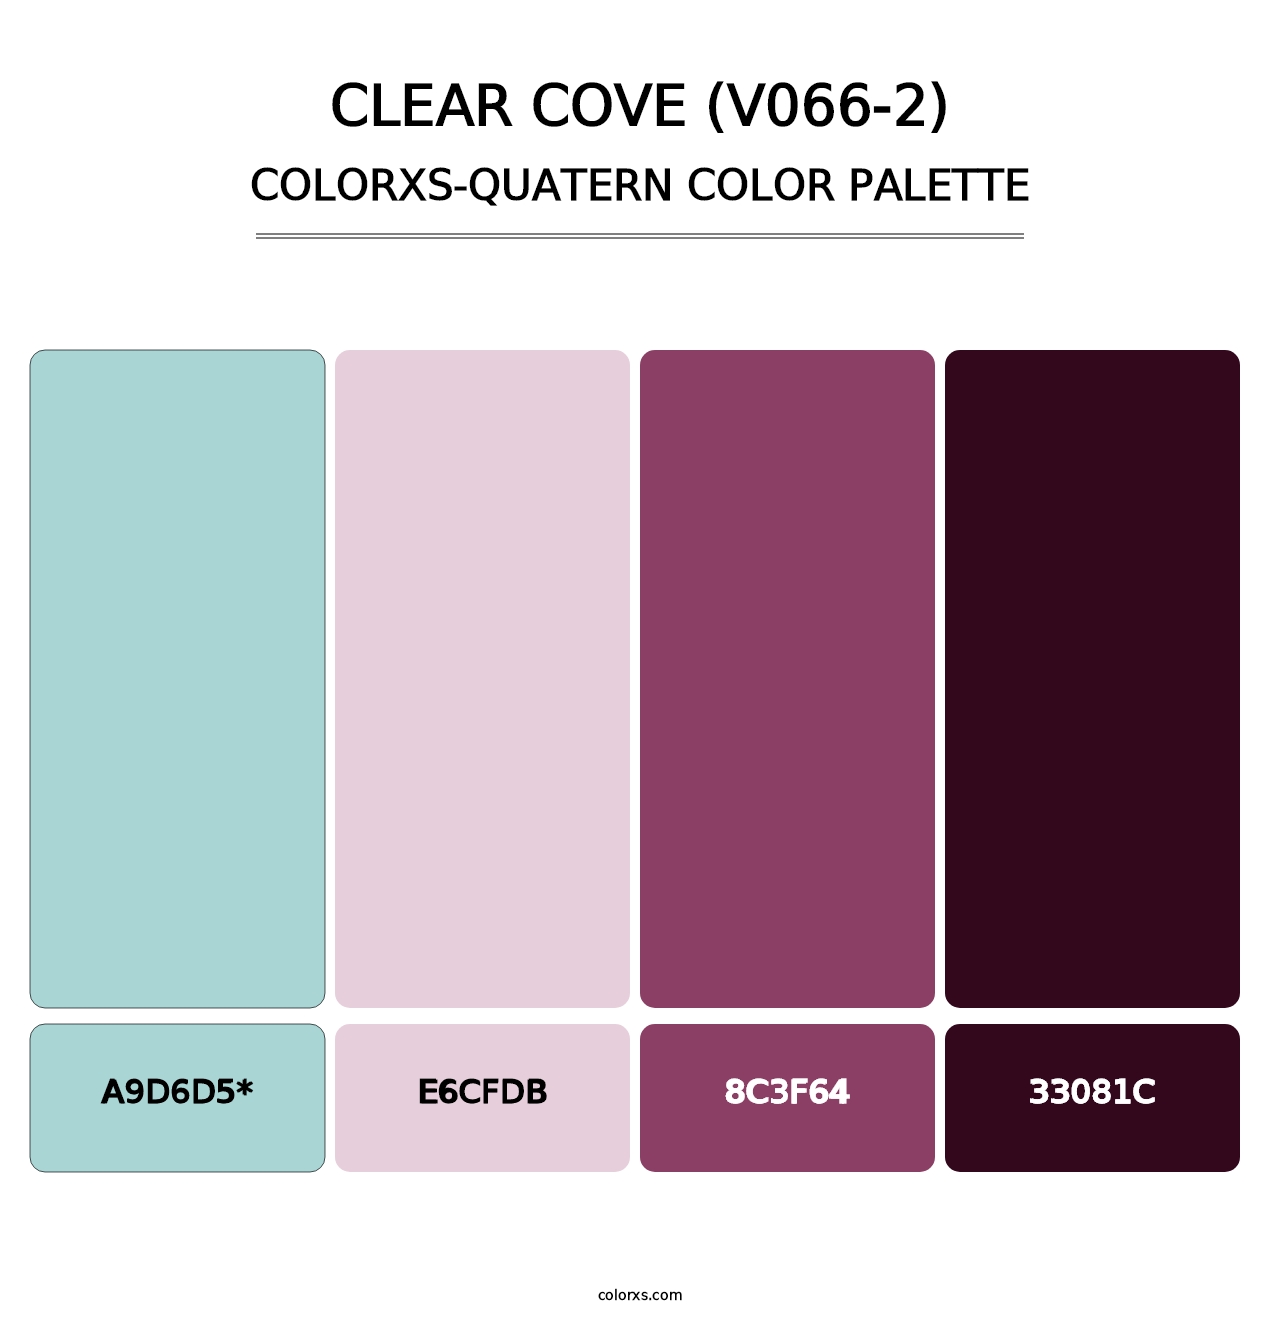 Clear Cove (V066-2) - Colorxs Quatern Palette